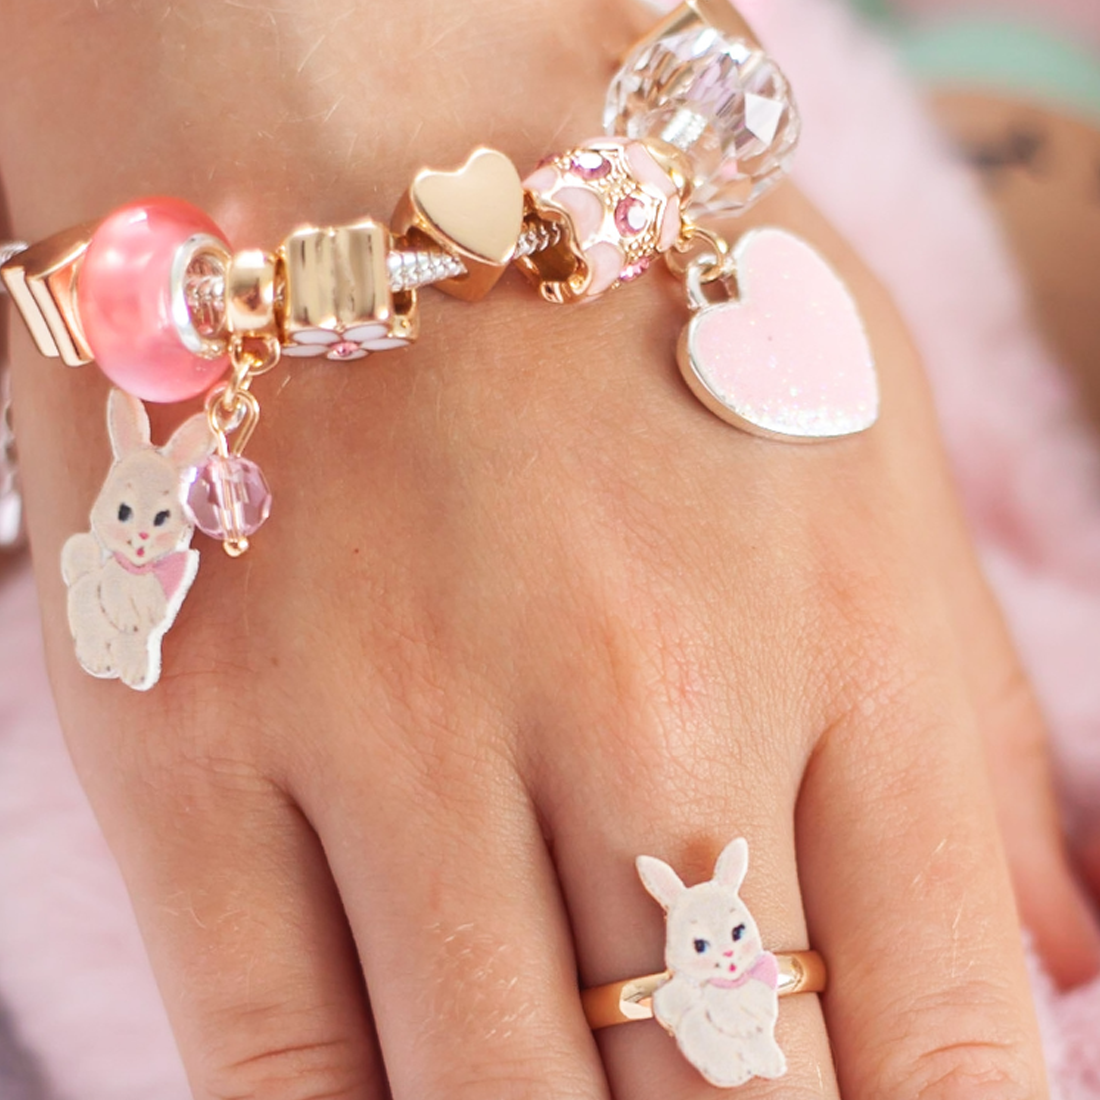 Floral Dreams Bunny Ring by Lauren Hinkley